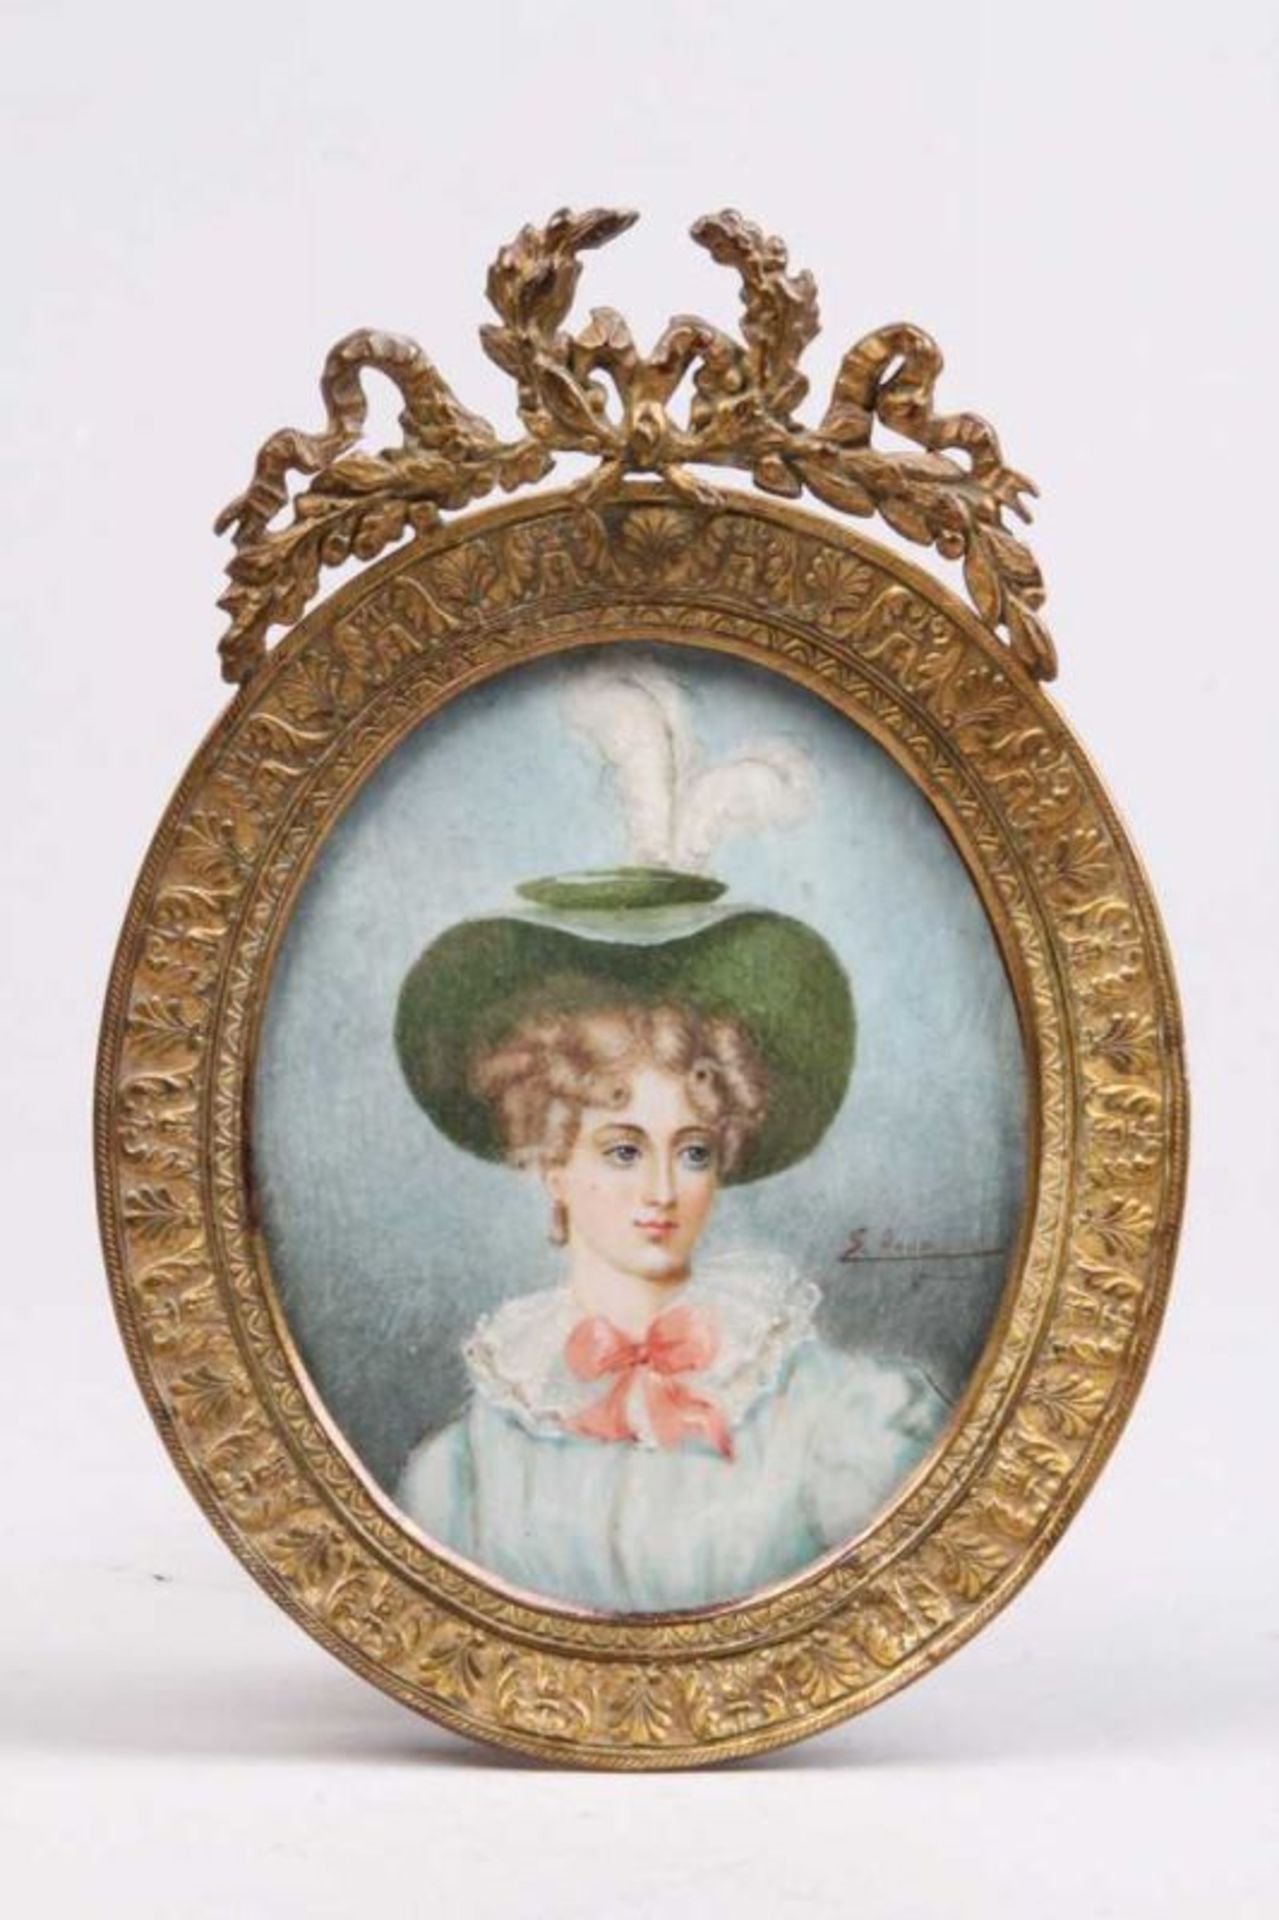 Miniatur.Frankreich, 19. Jh. Gouache auf Elfenbein. Portrait einer Dame. Seitl. sign: "S. Auog ?".